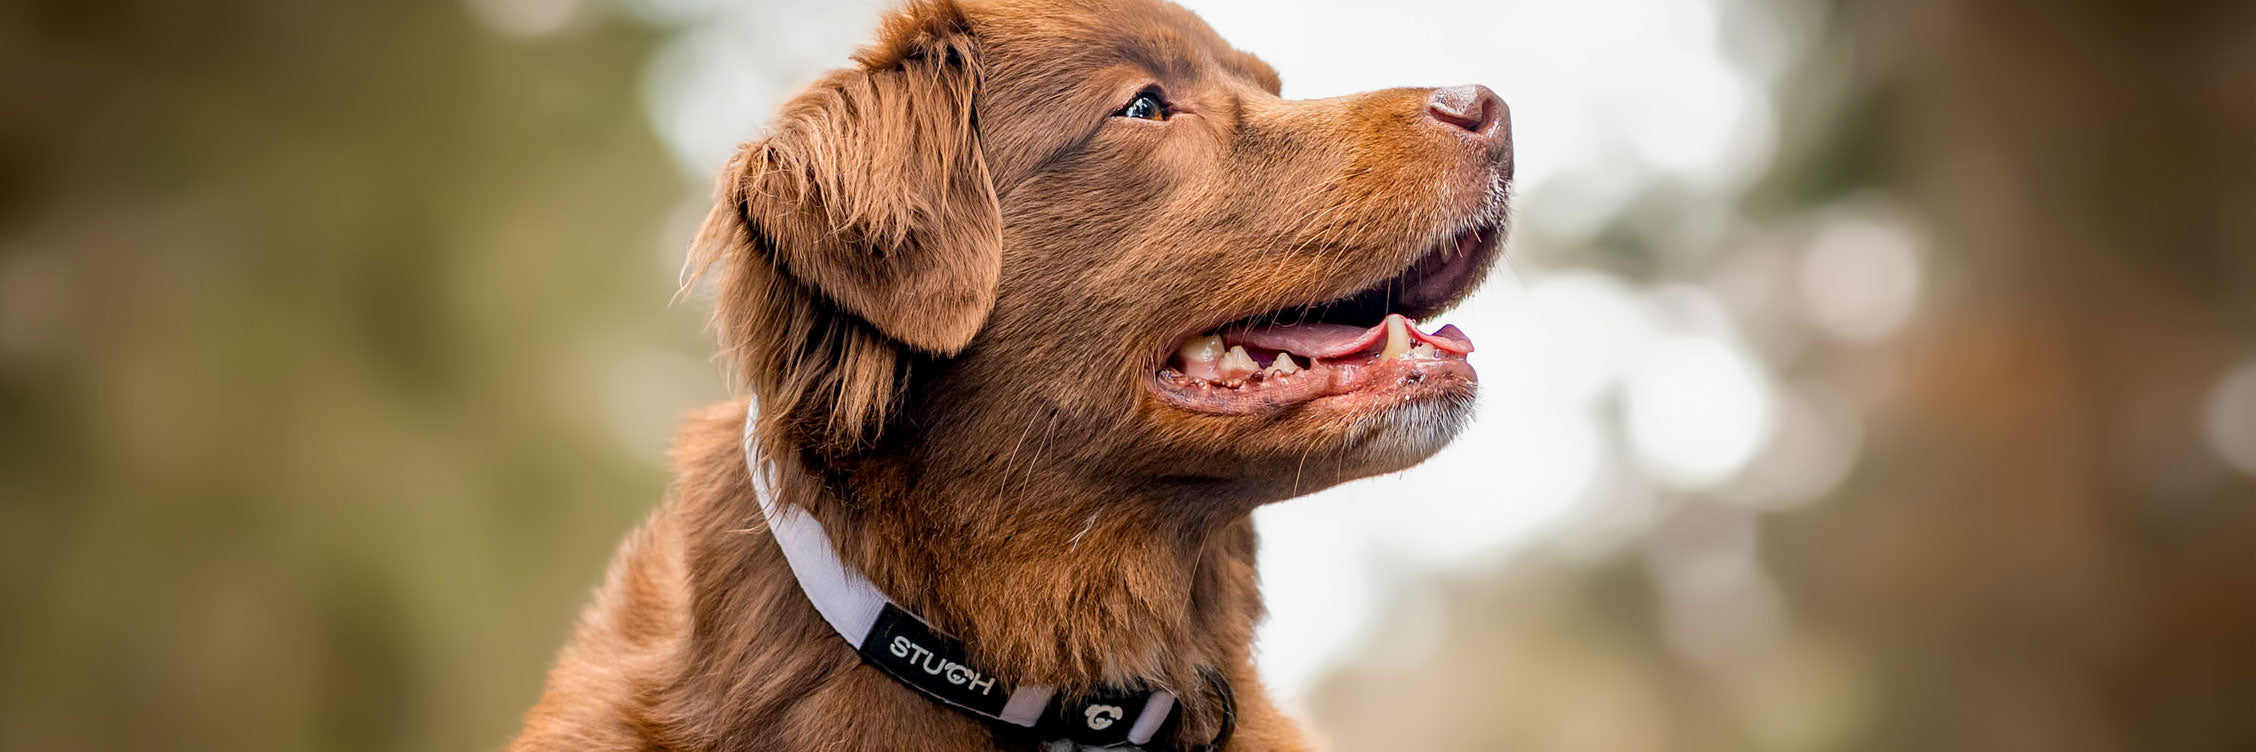 Brauner Hund Wald guckt entspannt nach oben und hat ein schönes Hundehalsband gepolstert in Farbe Flieder Lila an. Sehr schönes Halsband.